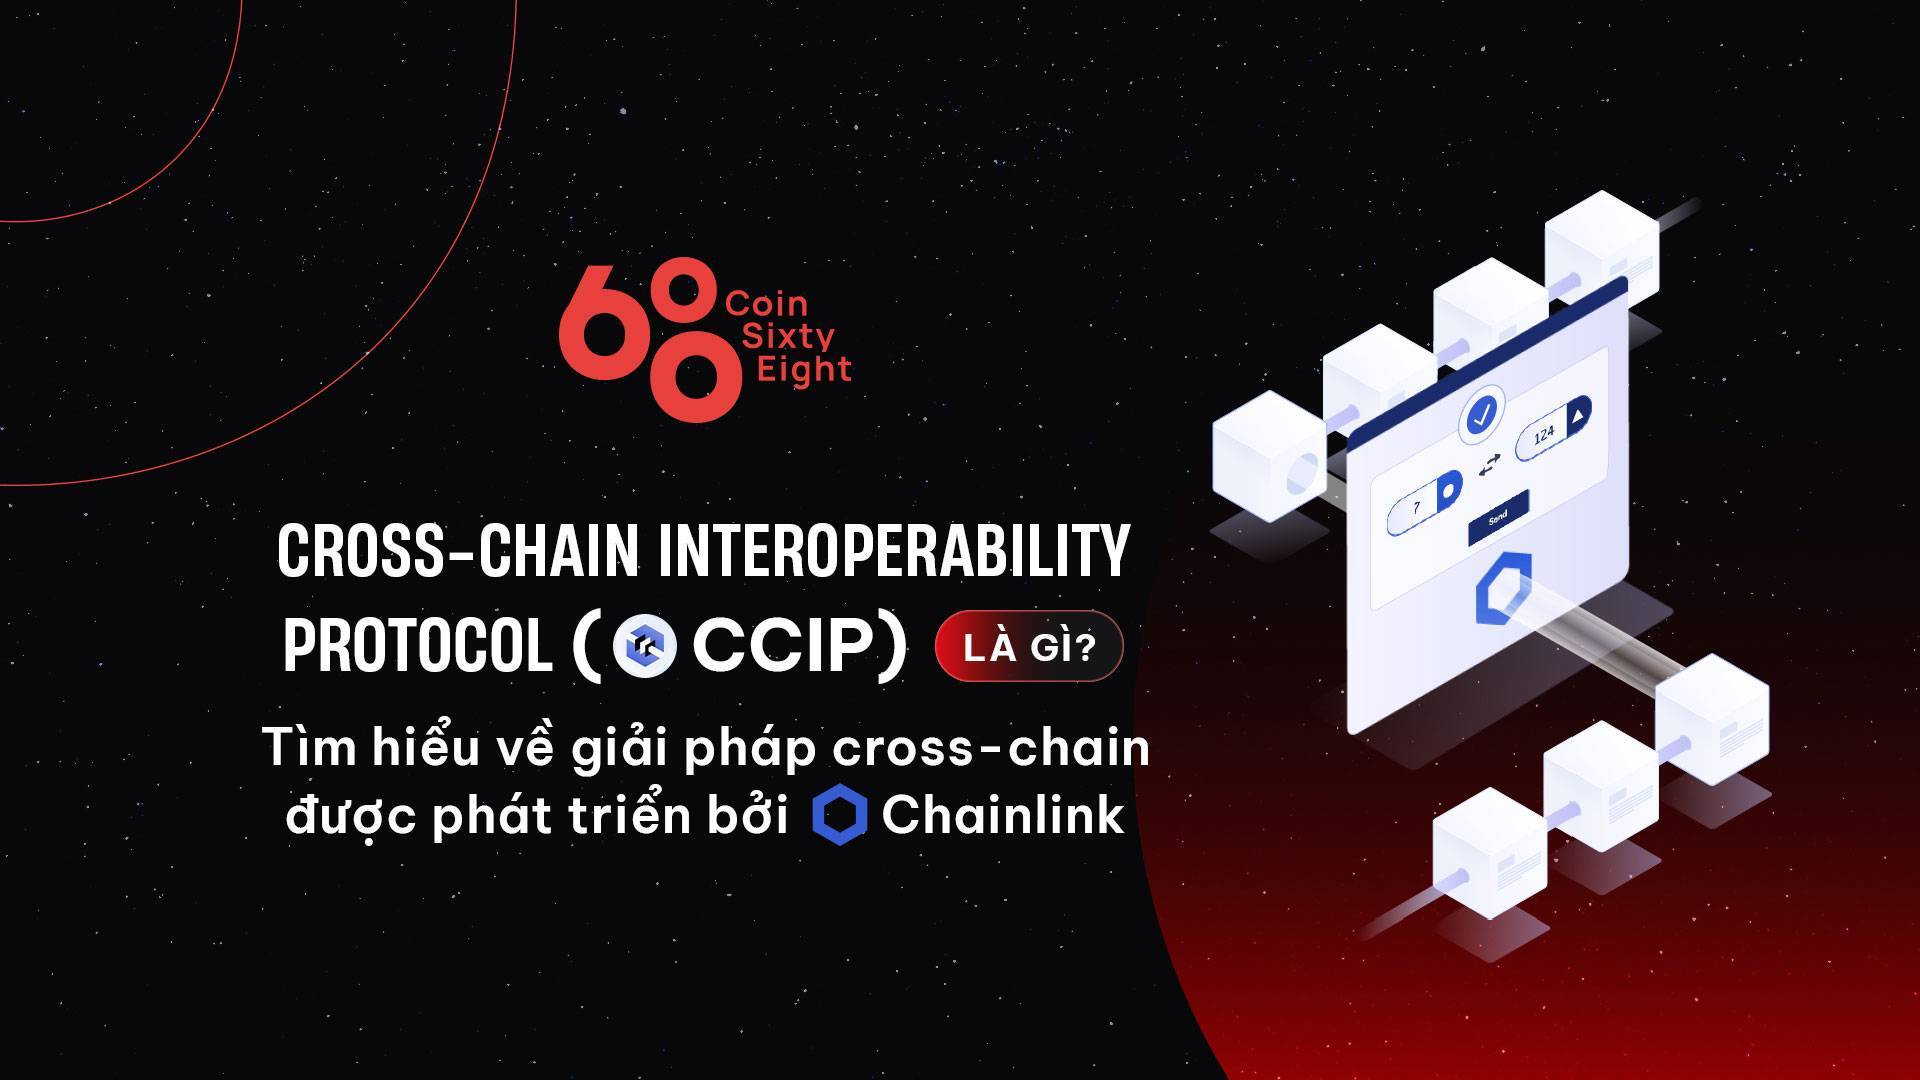 Cross-chain Interoperability Protocol ccip Là Gì Tìm Hiểu Về Giải Pháp Cross-chain Được Phát Triển Bởi Chainlink